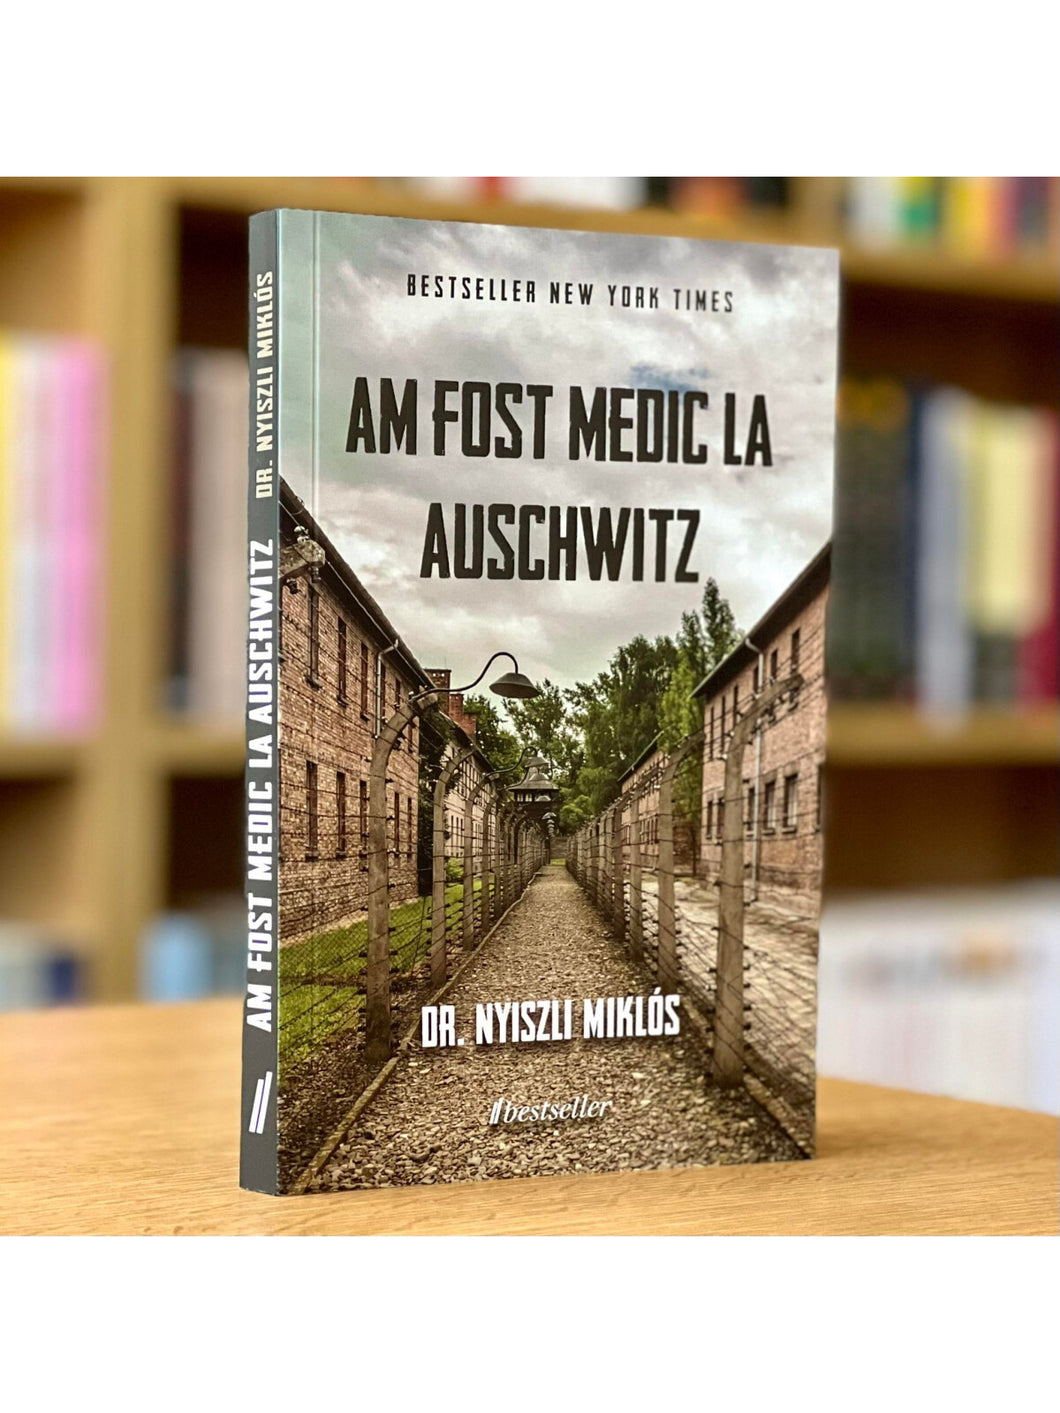 Am fost medic la Aushwitz - DR NYISZLI MIKLOS